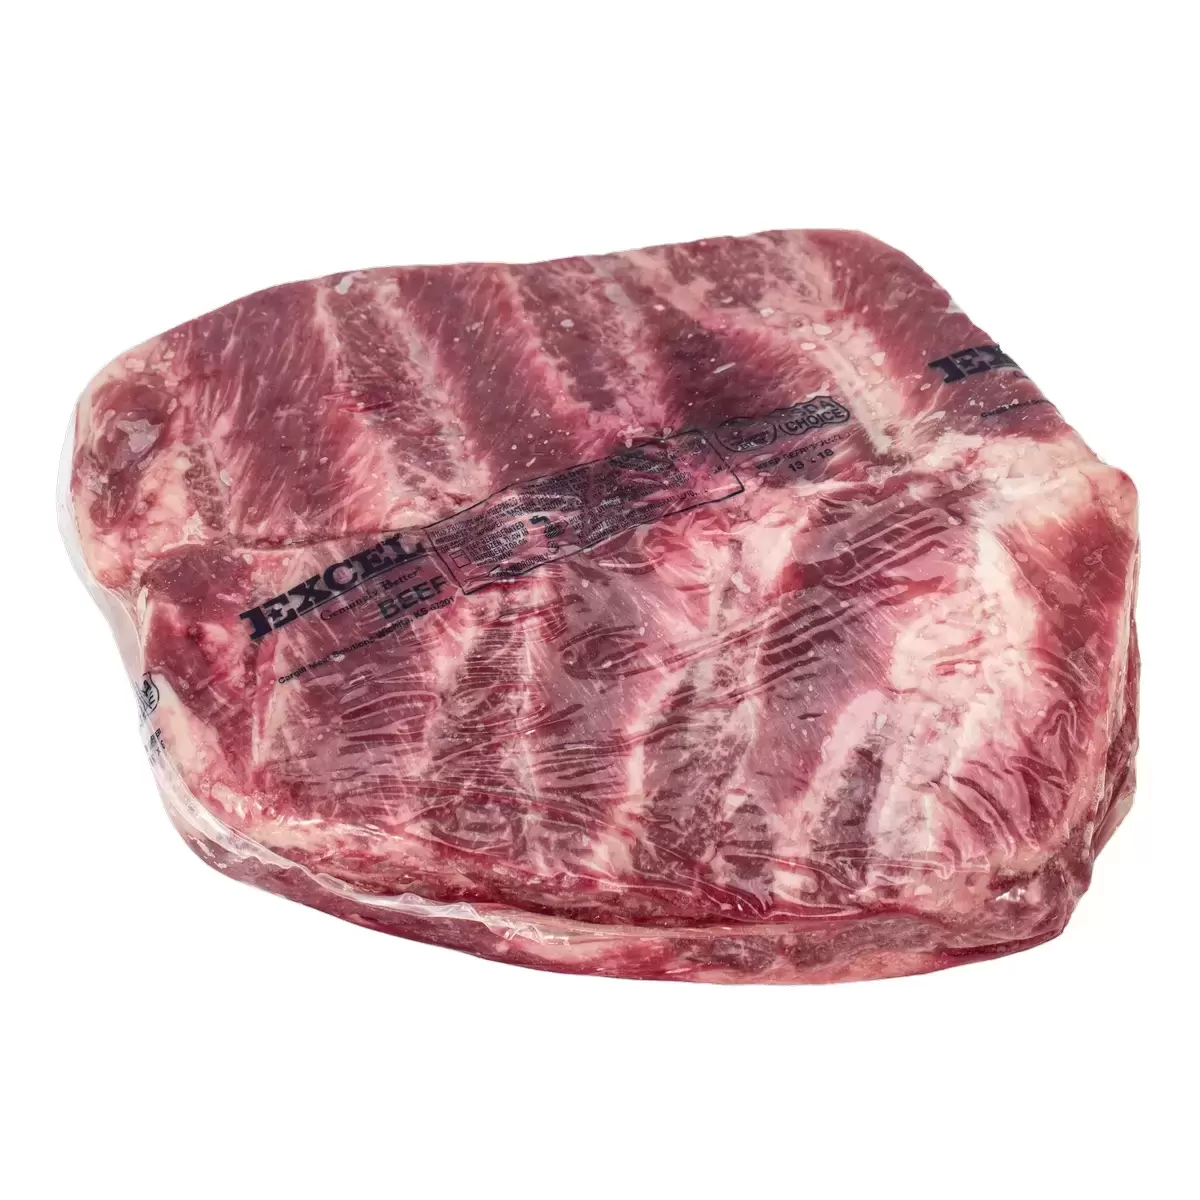 美國特選冷凍翼板肉 24公斤 / 箱